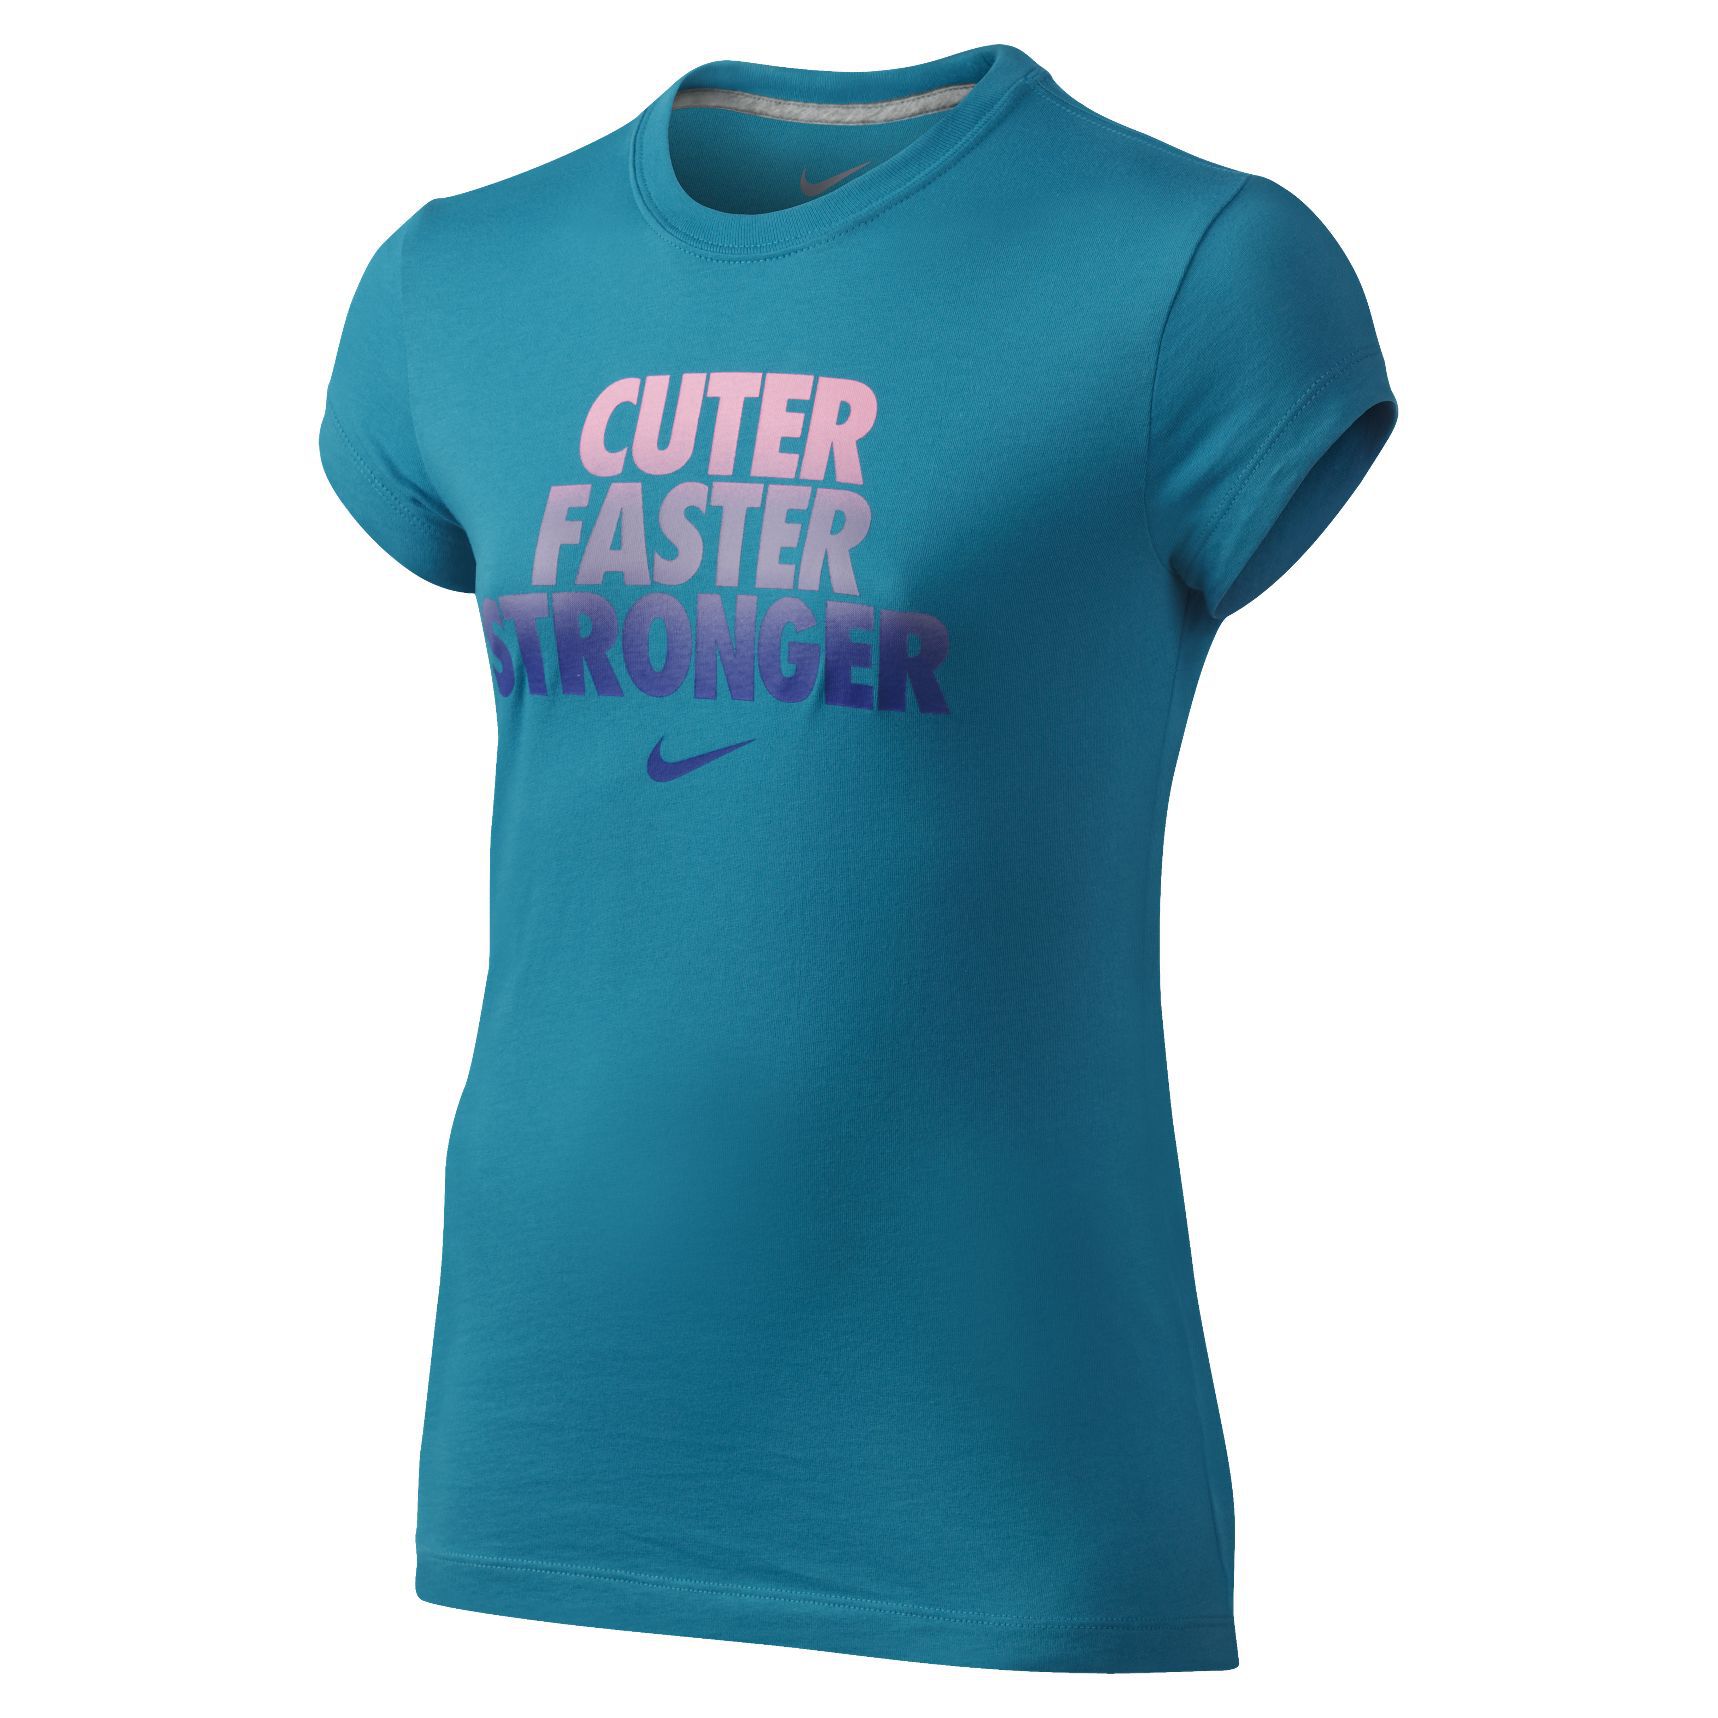 Nike Girl's Cuter, Faster, Stronger Tee